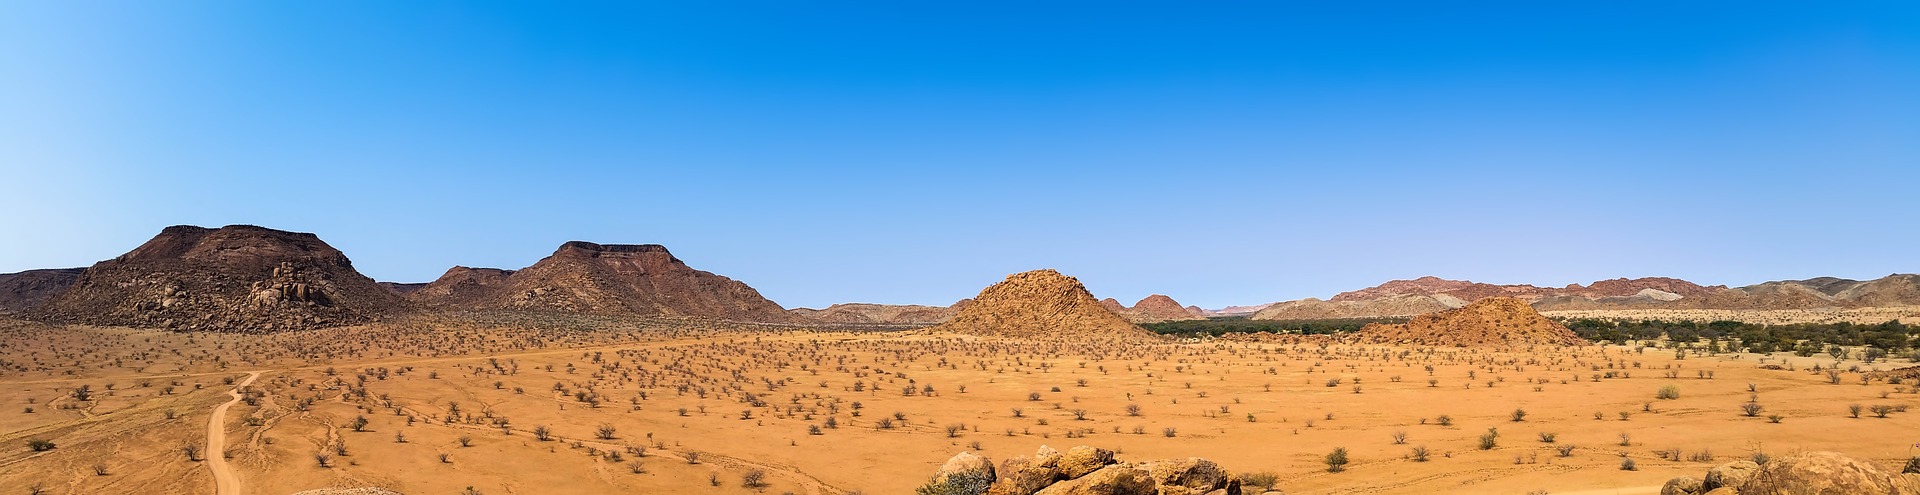 沙漠, 荒芜之地, 全景图